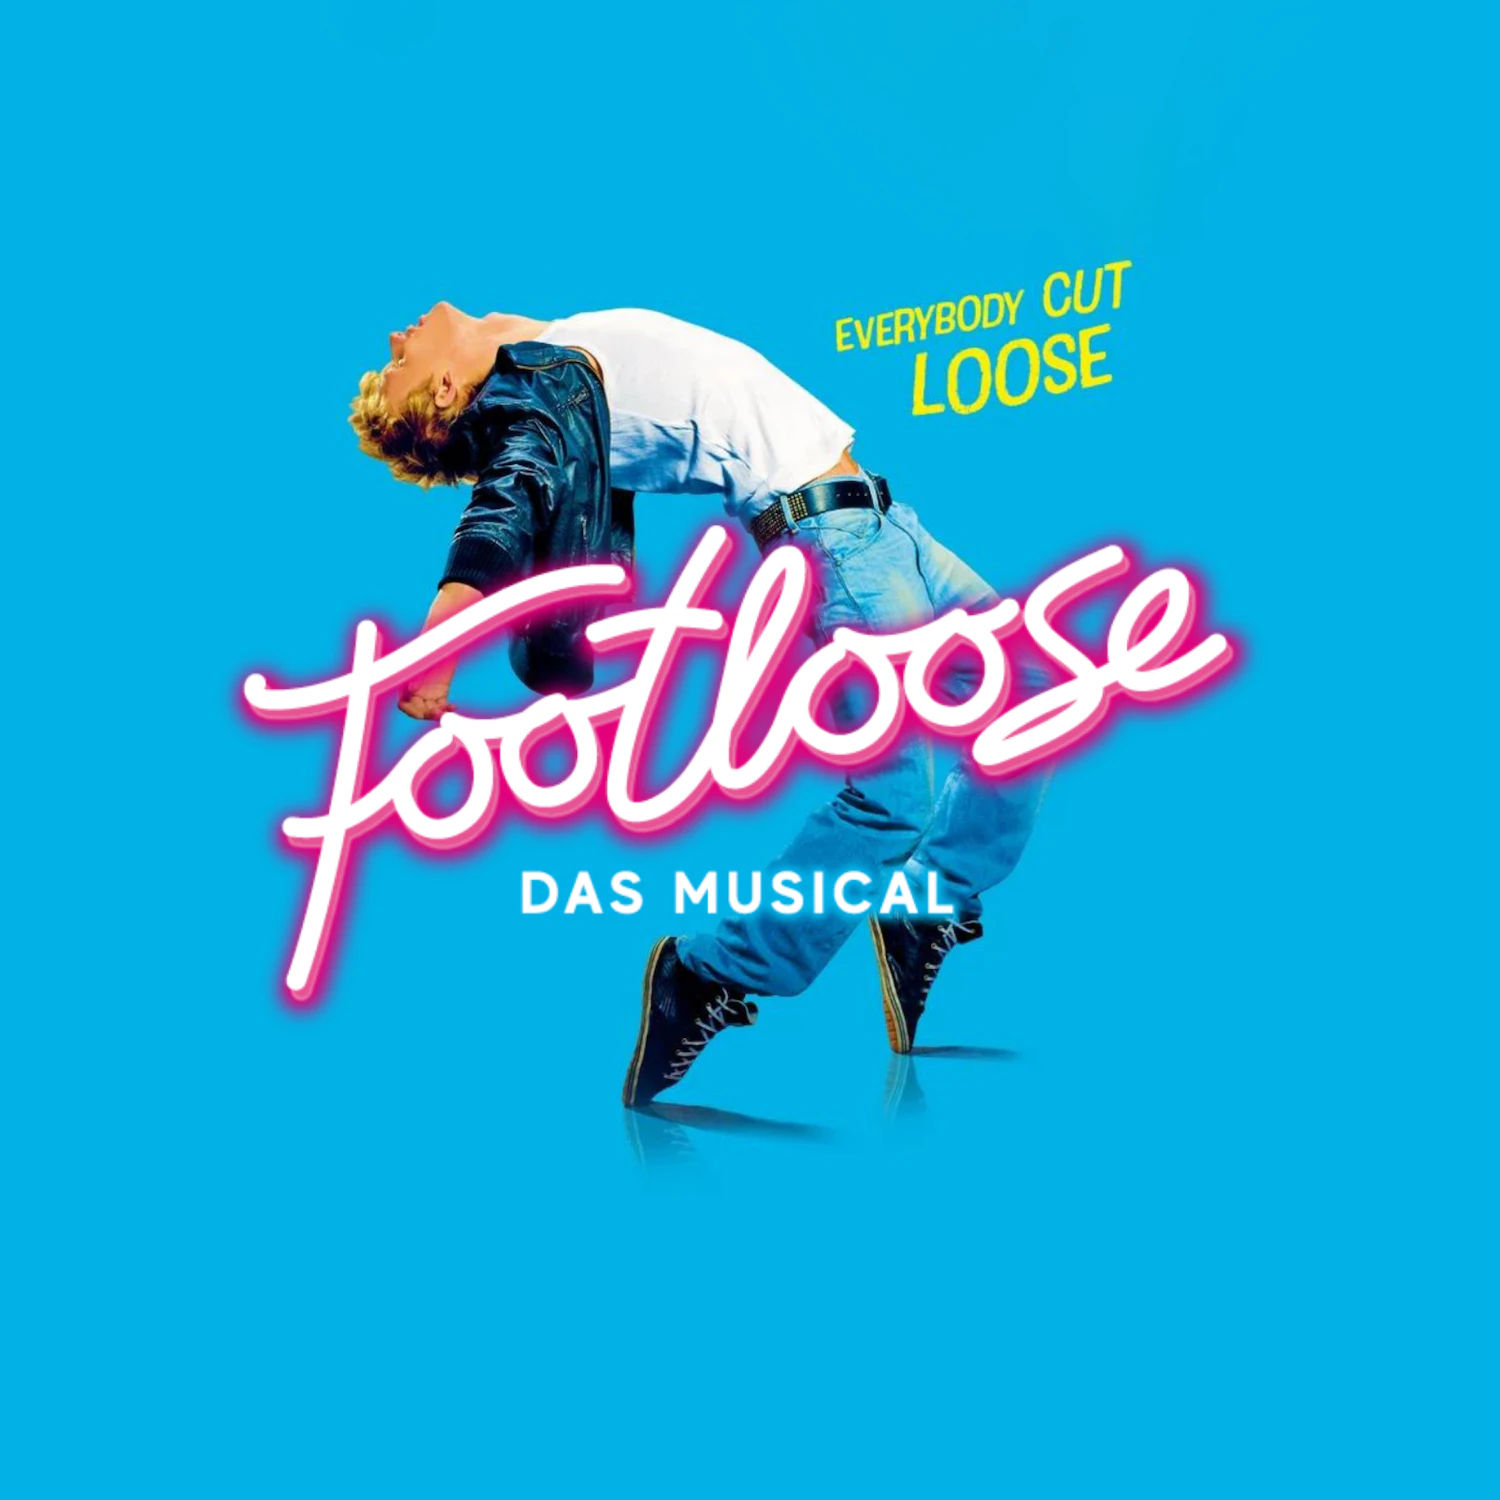 Footloose - Das Musical Tour